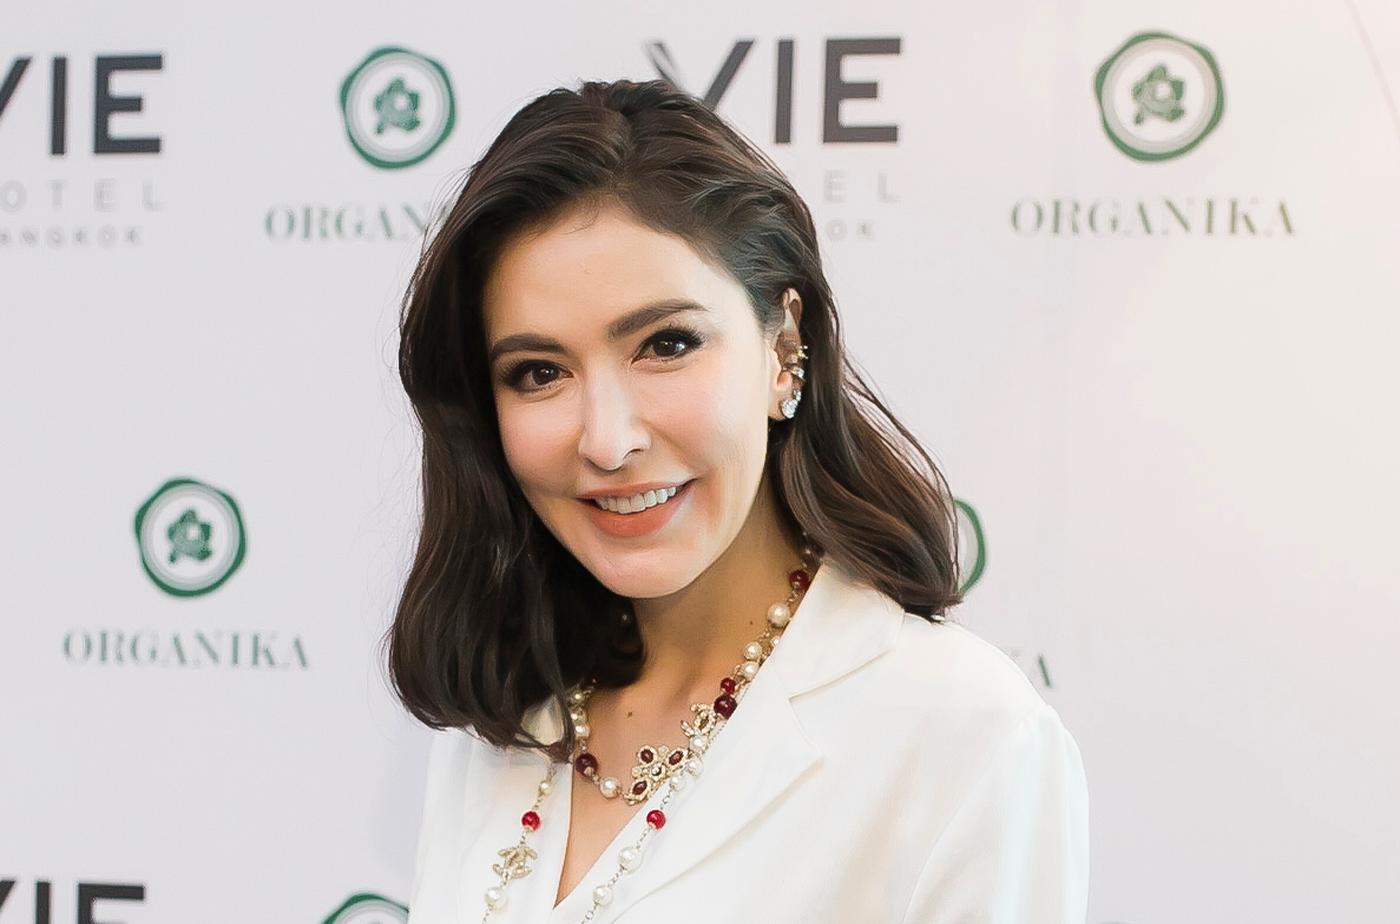 ORGANIKA was created by Thai-Danish actress, Sririta Jensen
